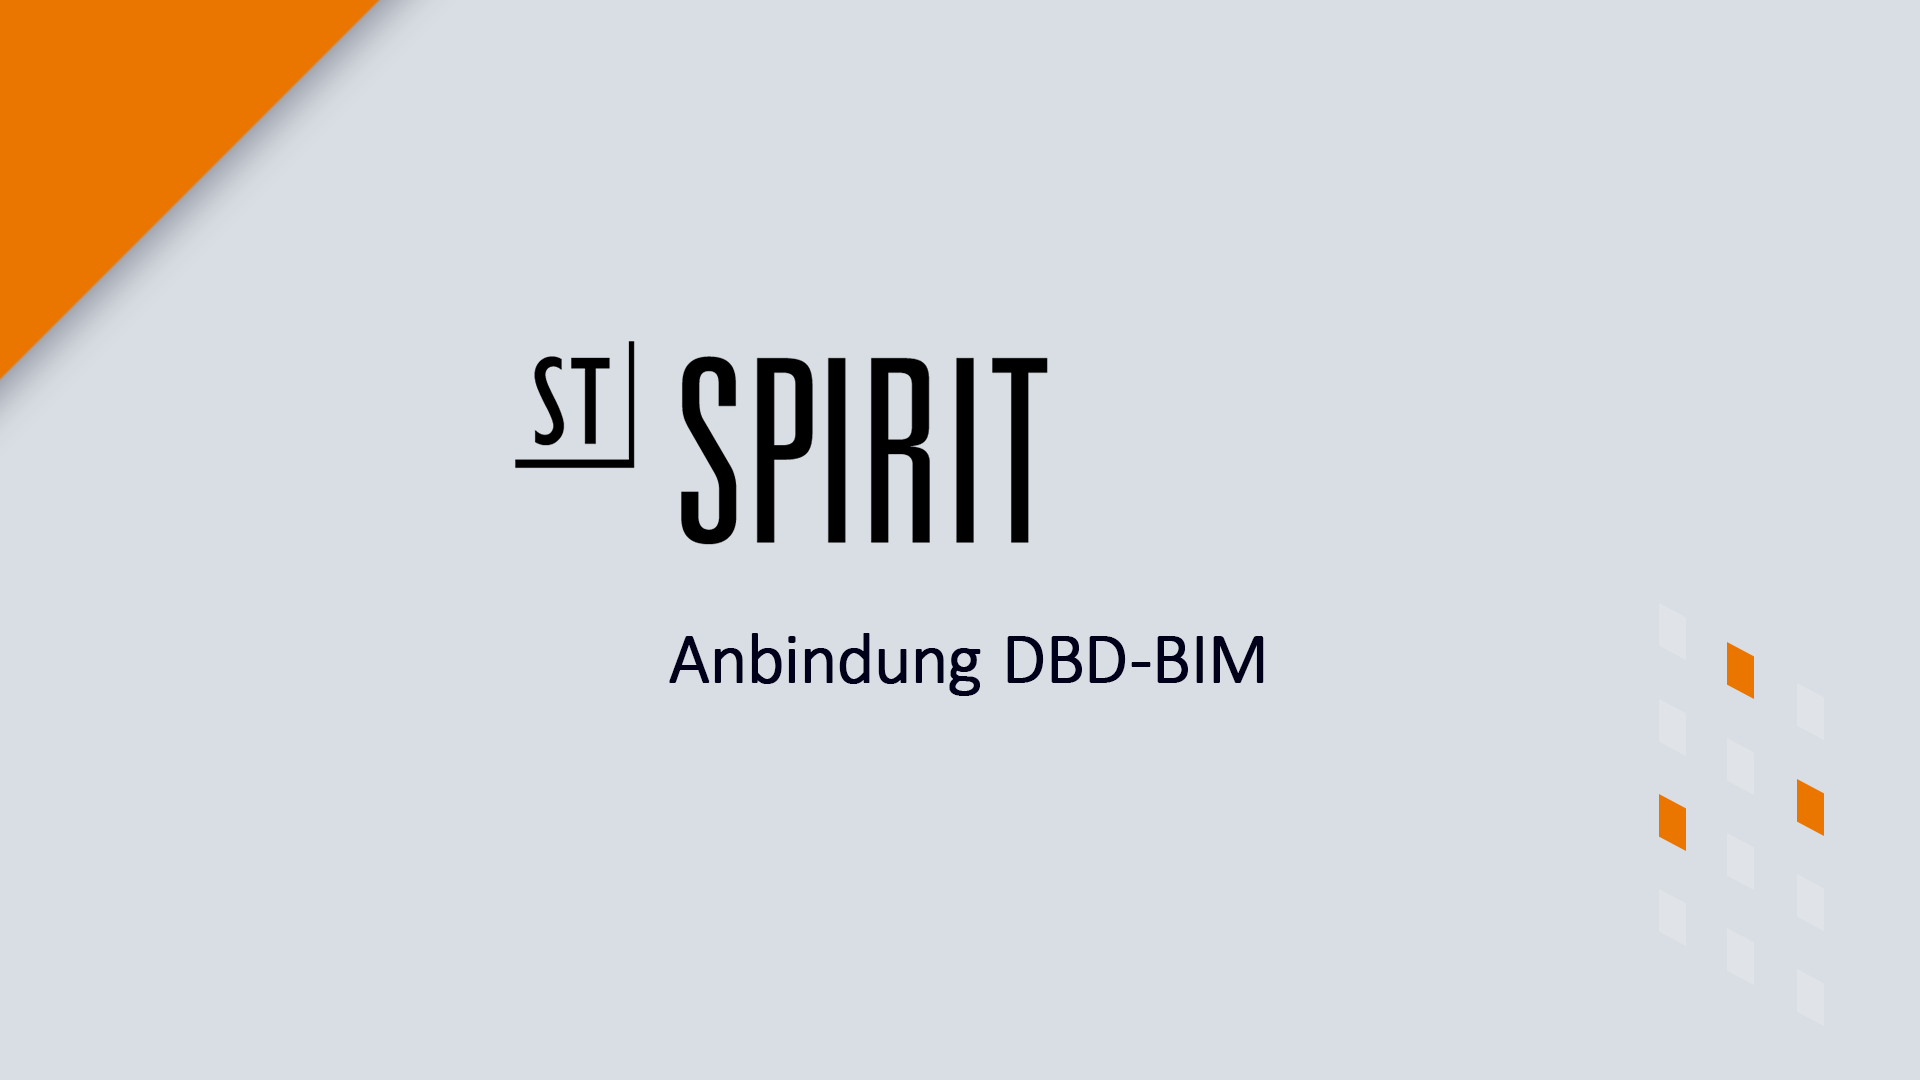 DBD-BIM in SPIRIT